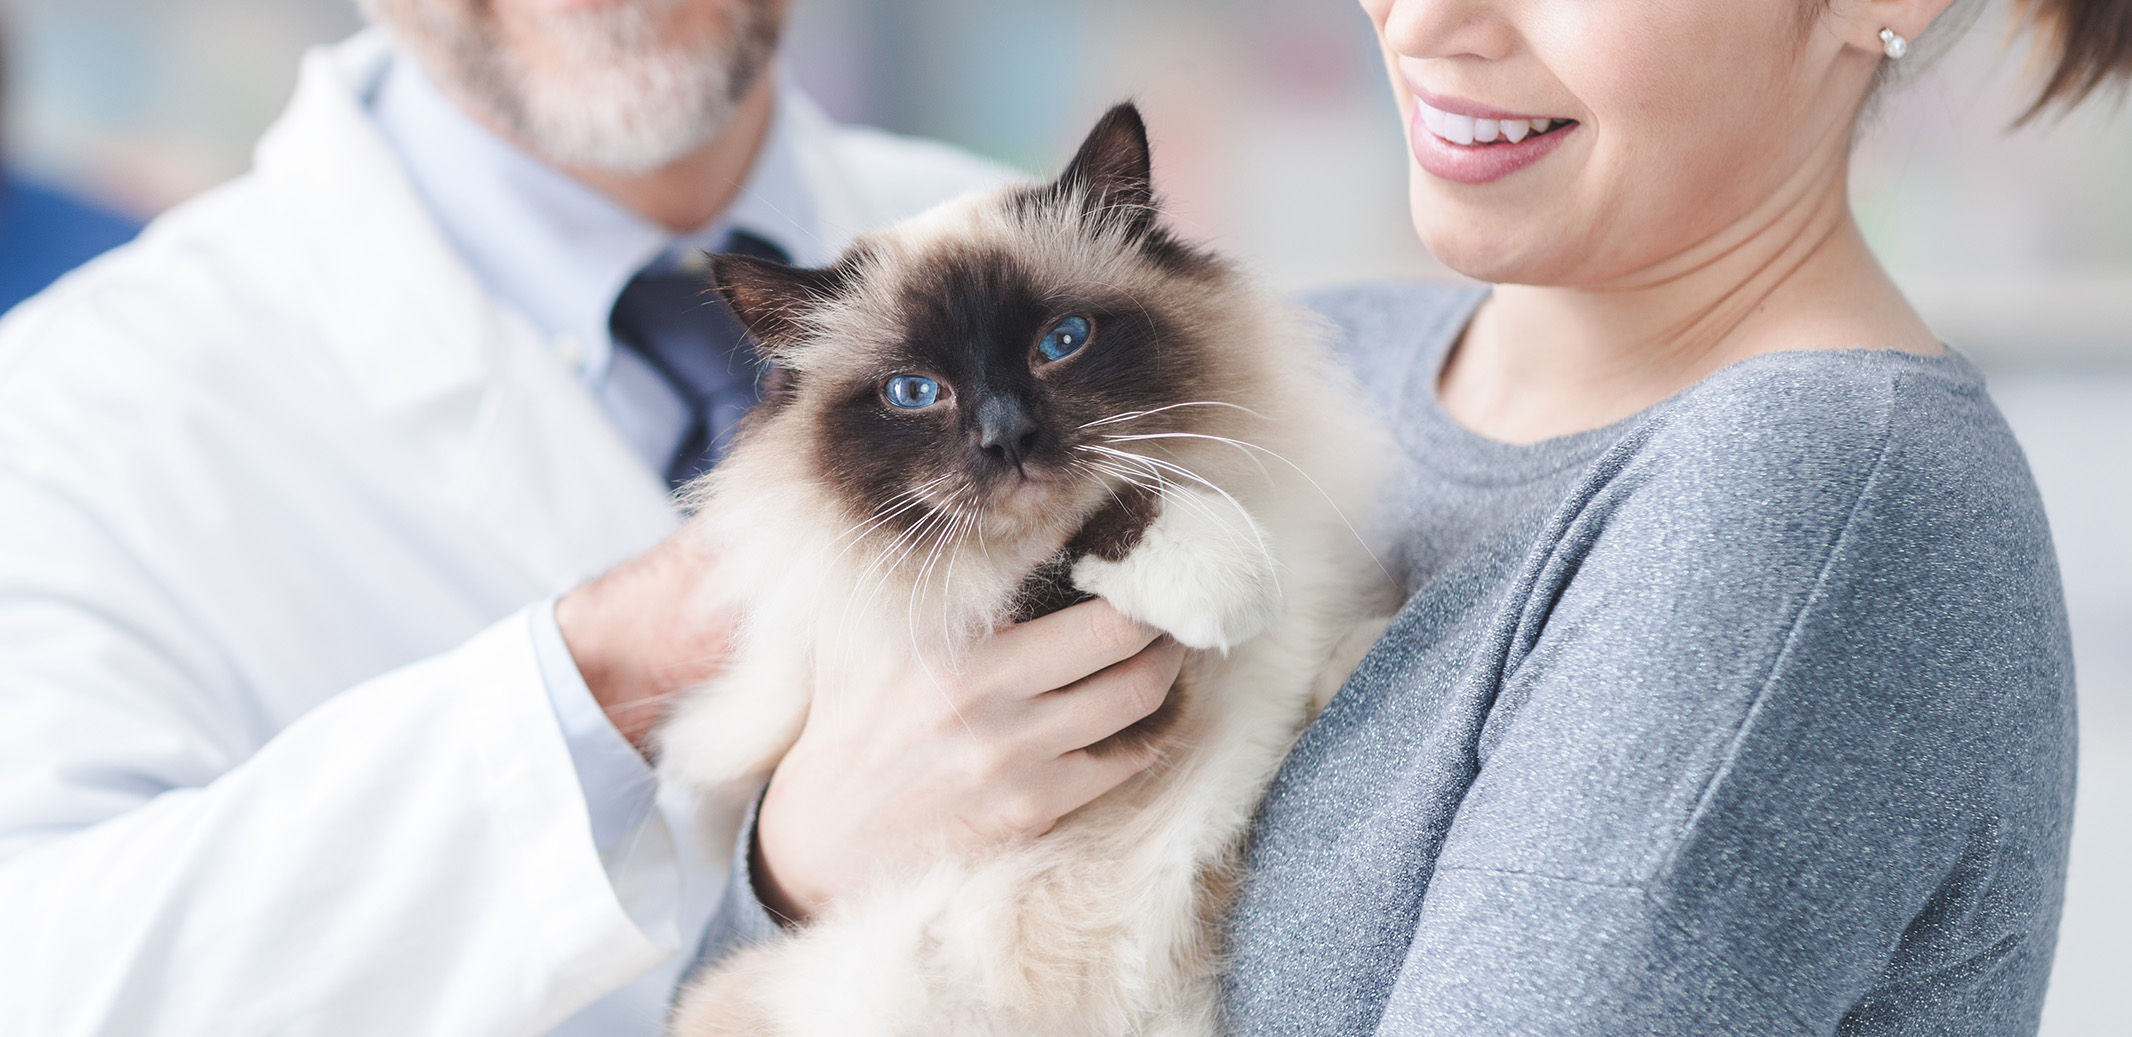 cat being held at vet - Rosecrans Veterinary Clinic